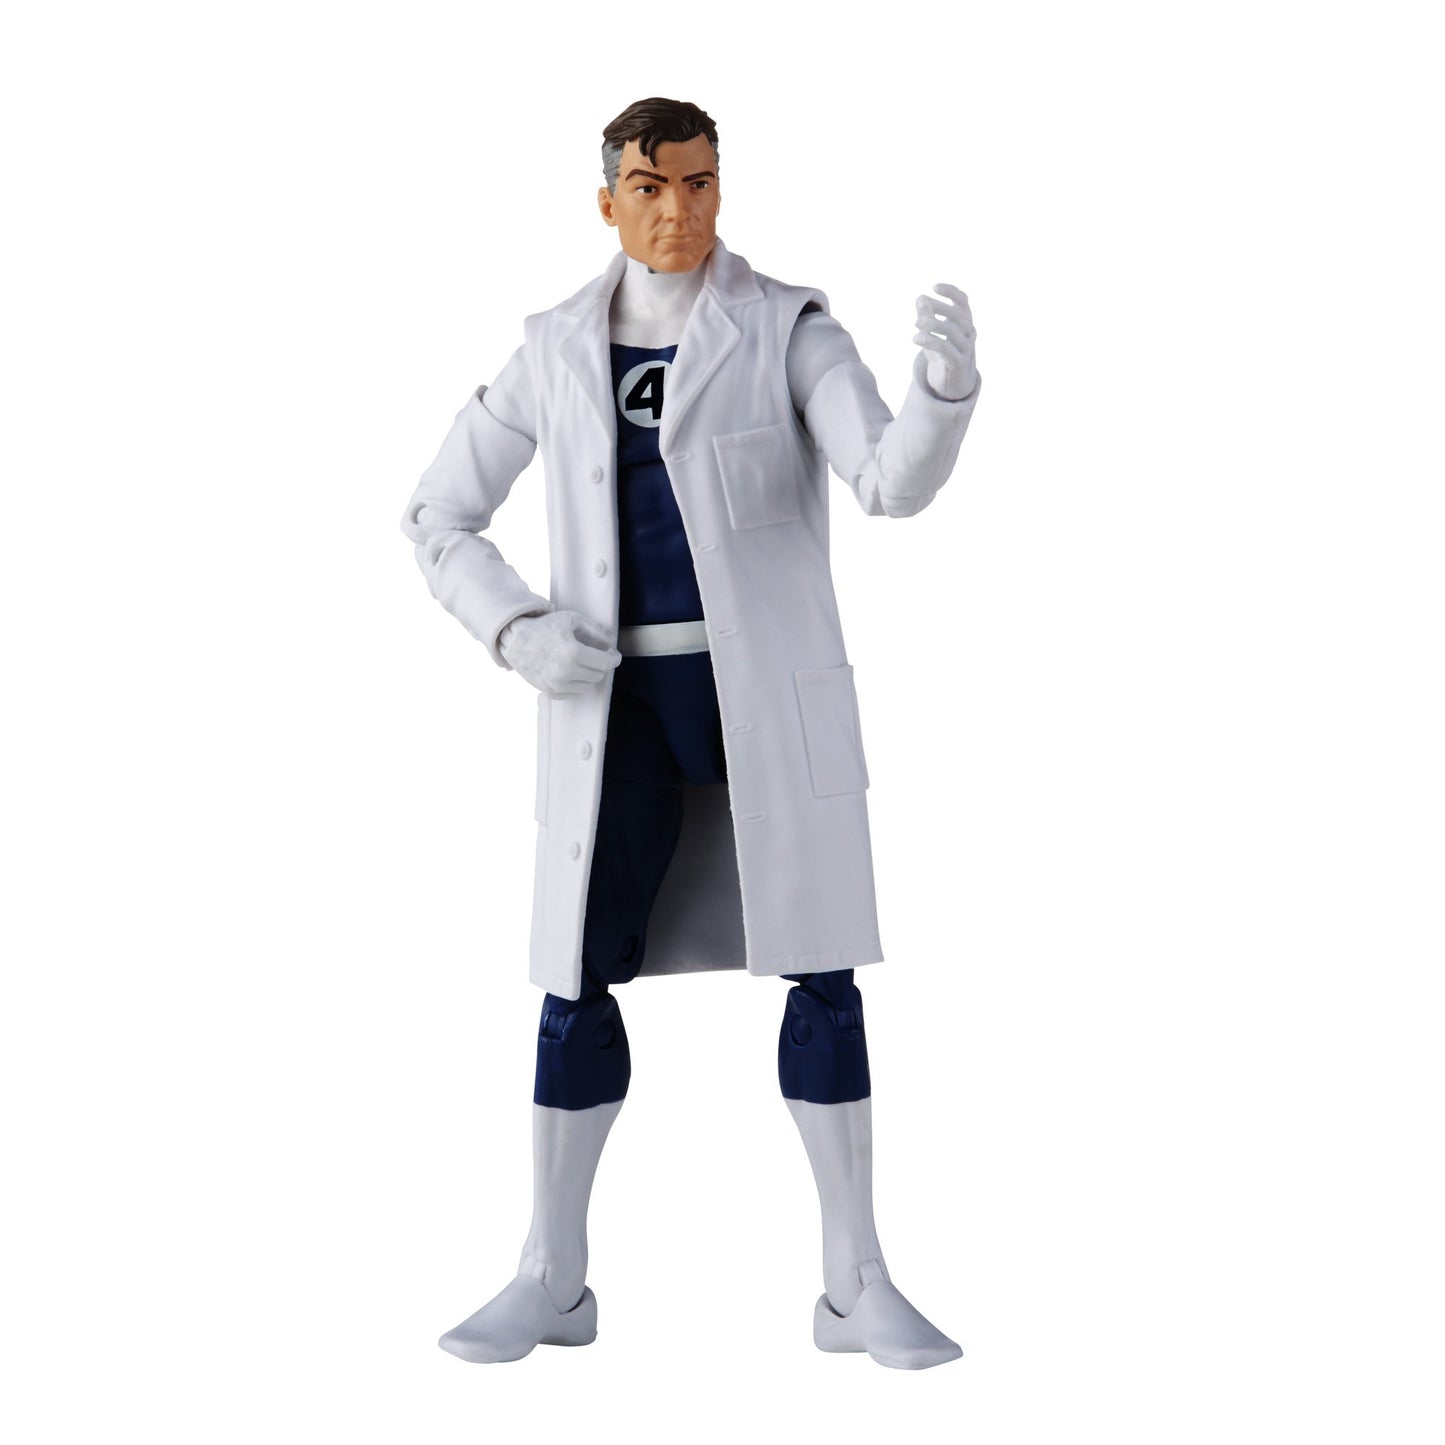 Marvel Legends Series Retro Mr. Fantastic figure in lab coat